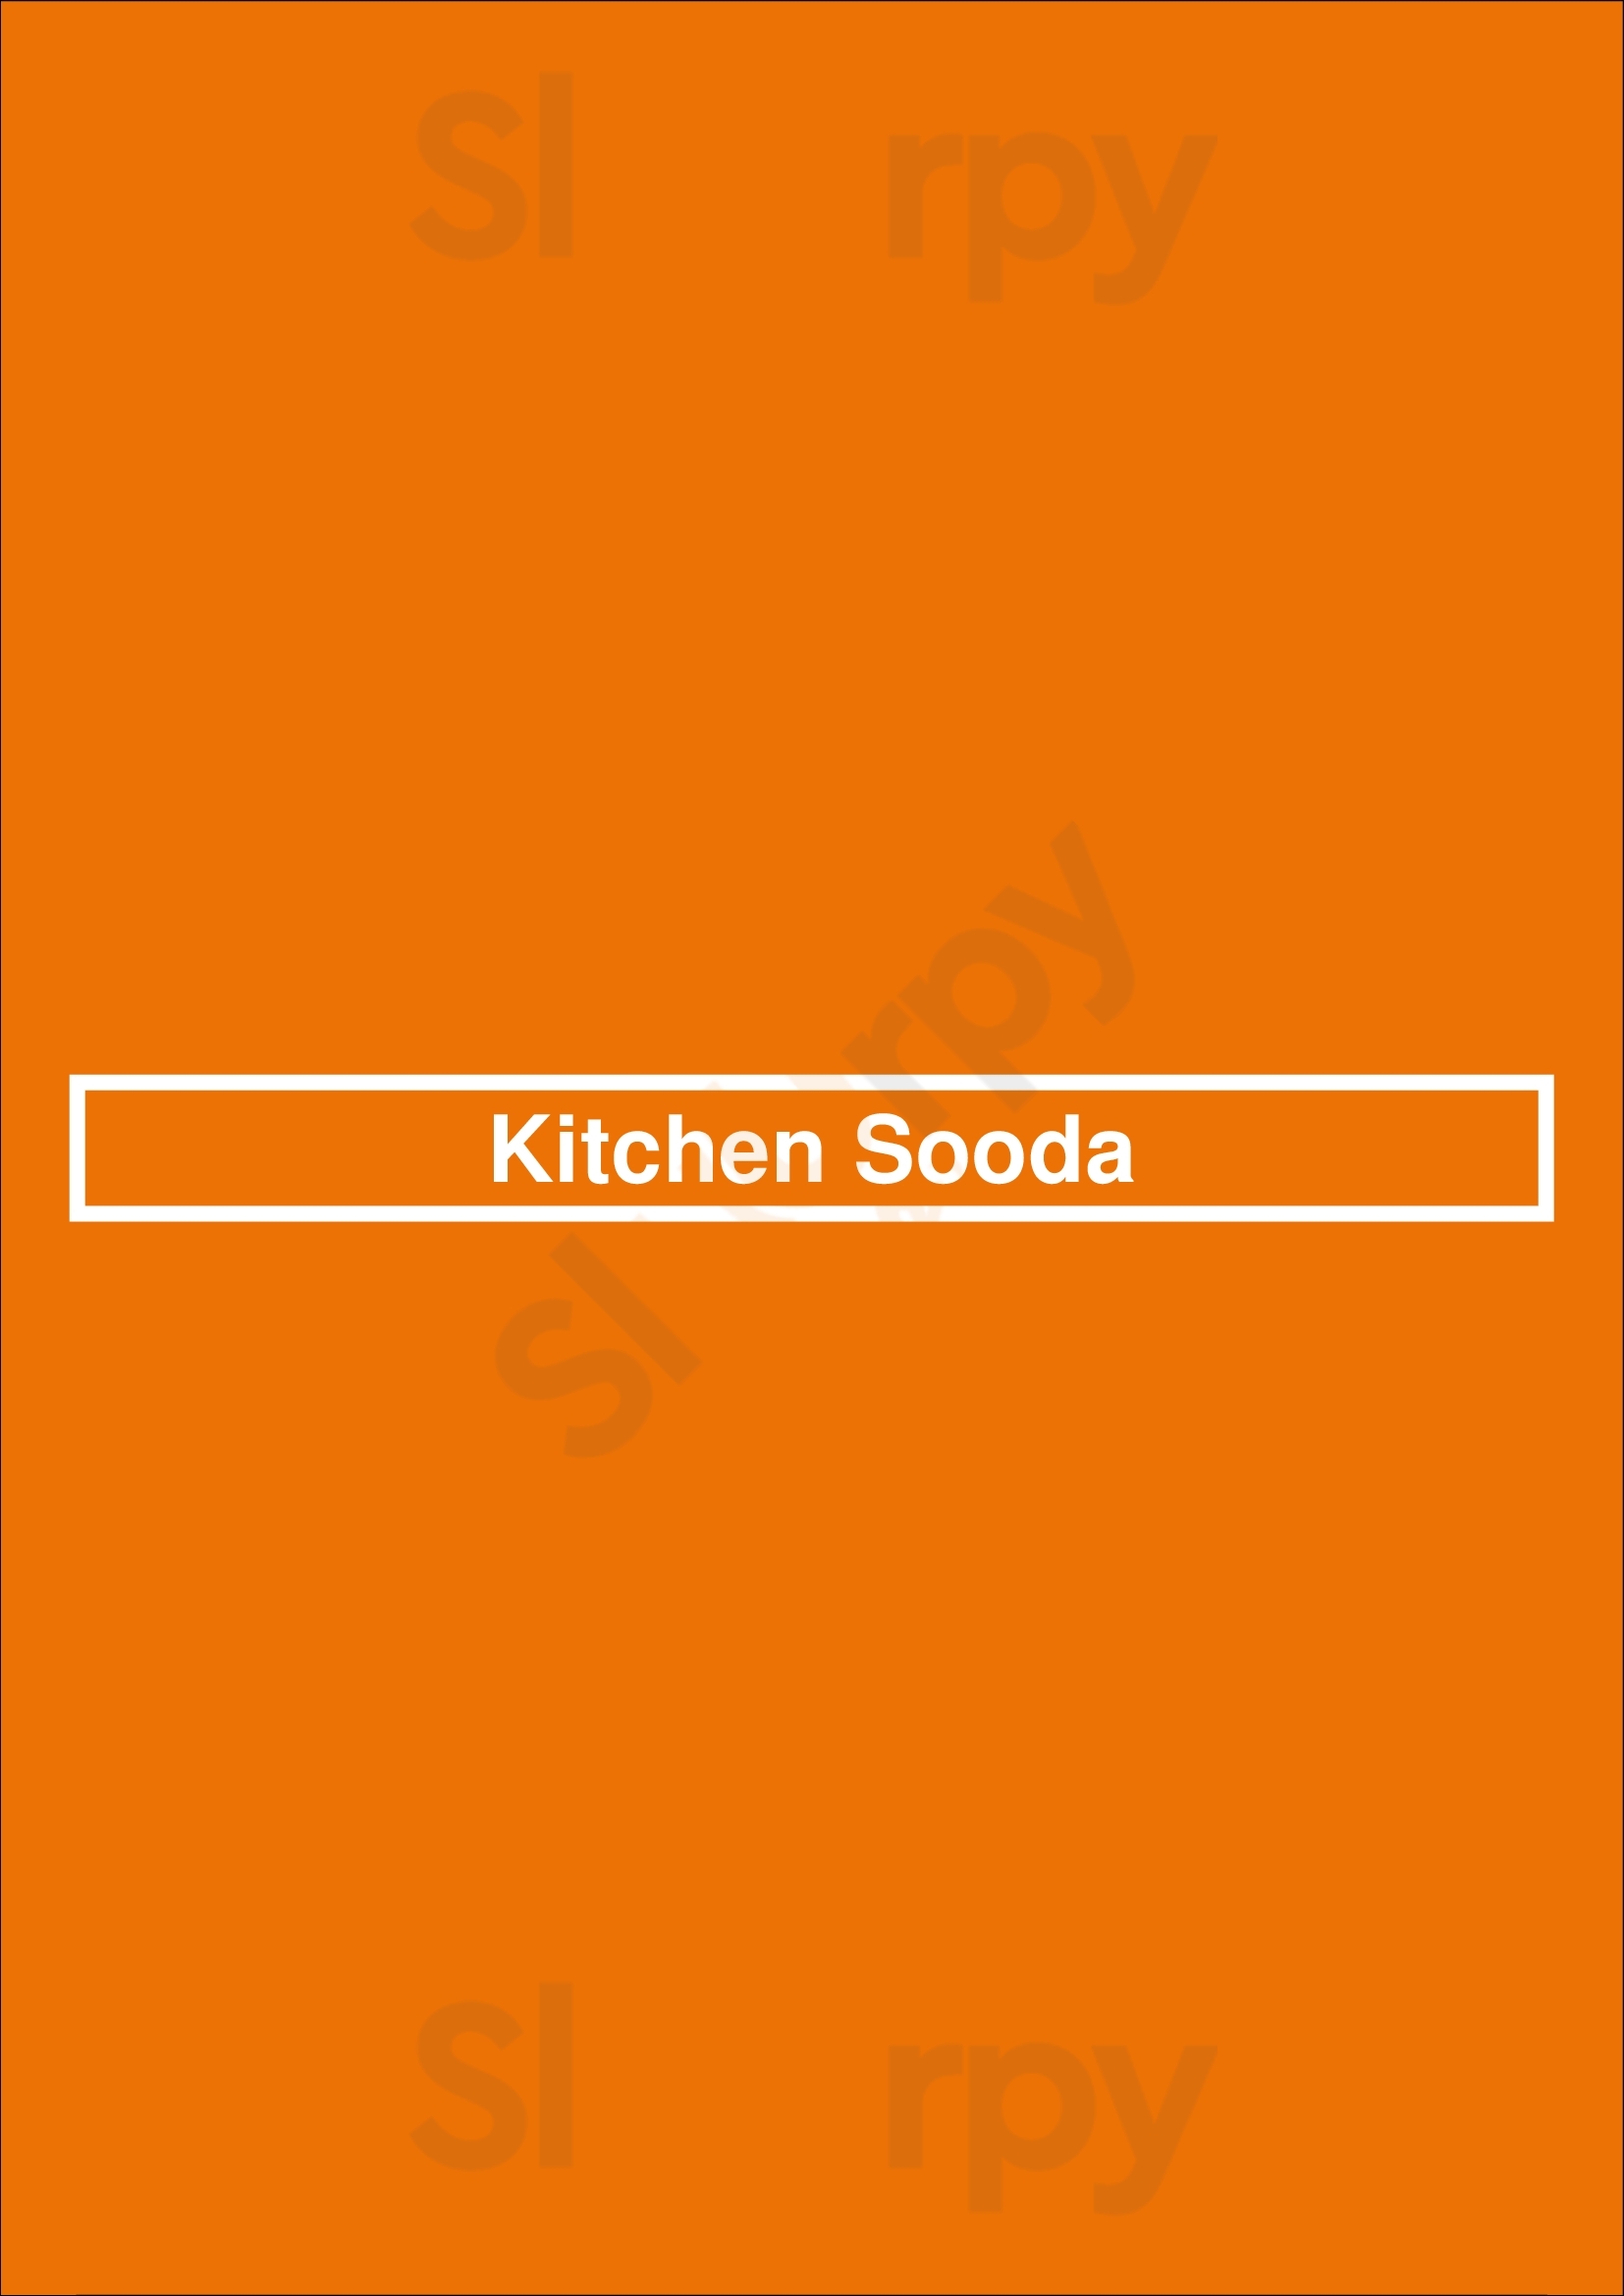 Kitchen Sooda Los Angeles Menu - 1